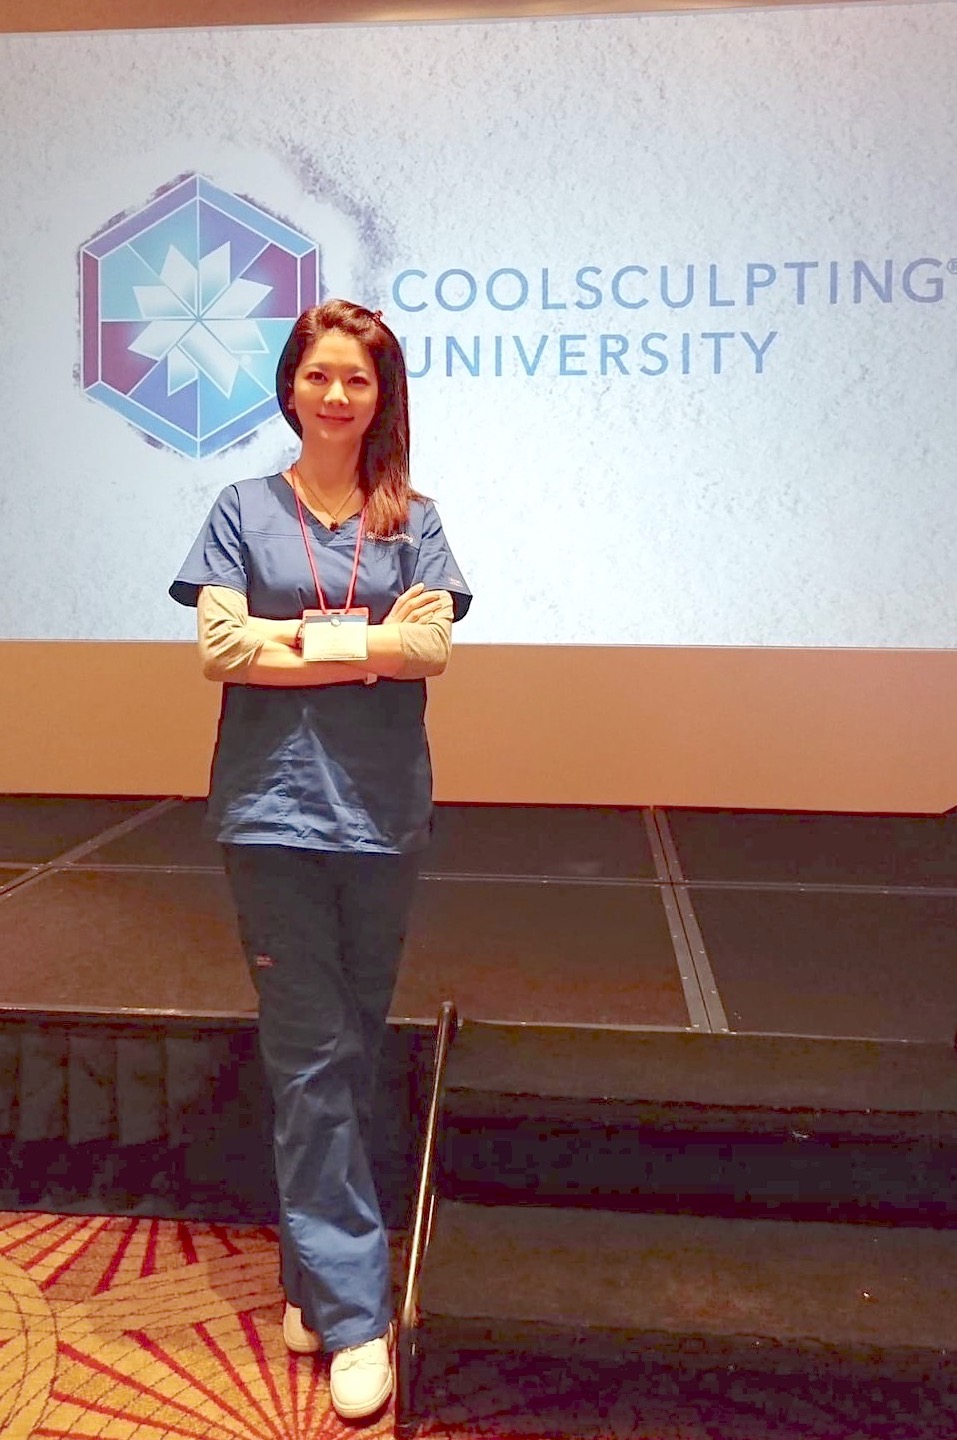 盧采葳醫師於 2017 年受邀參與酷塑大學（CoolSculpting University），並獲得官方認證-三豐專業醫美體雕推薦